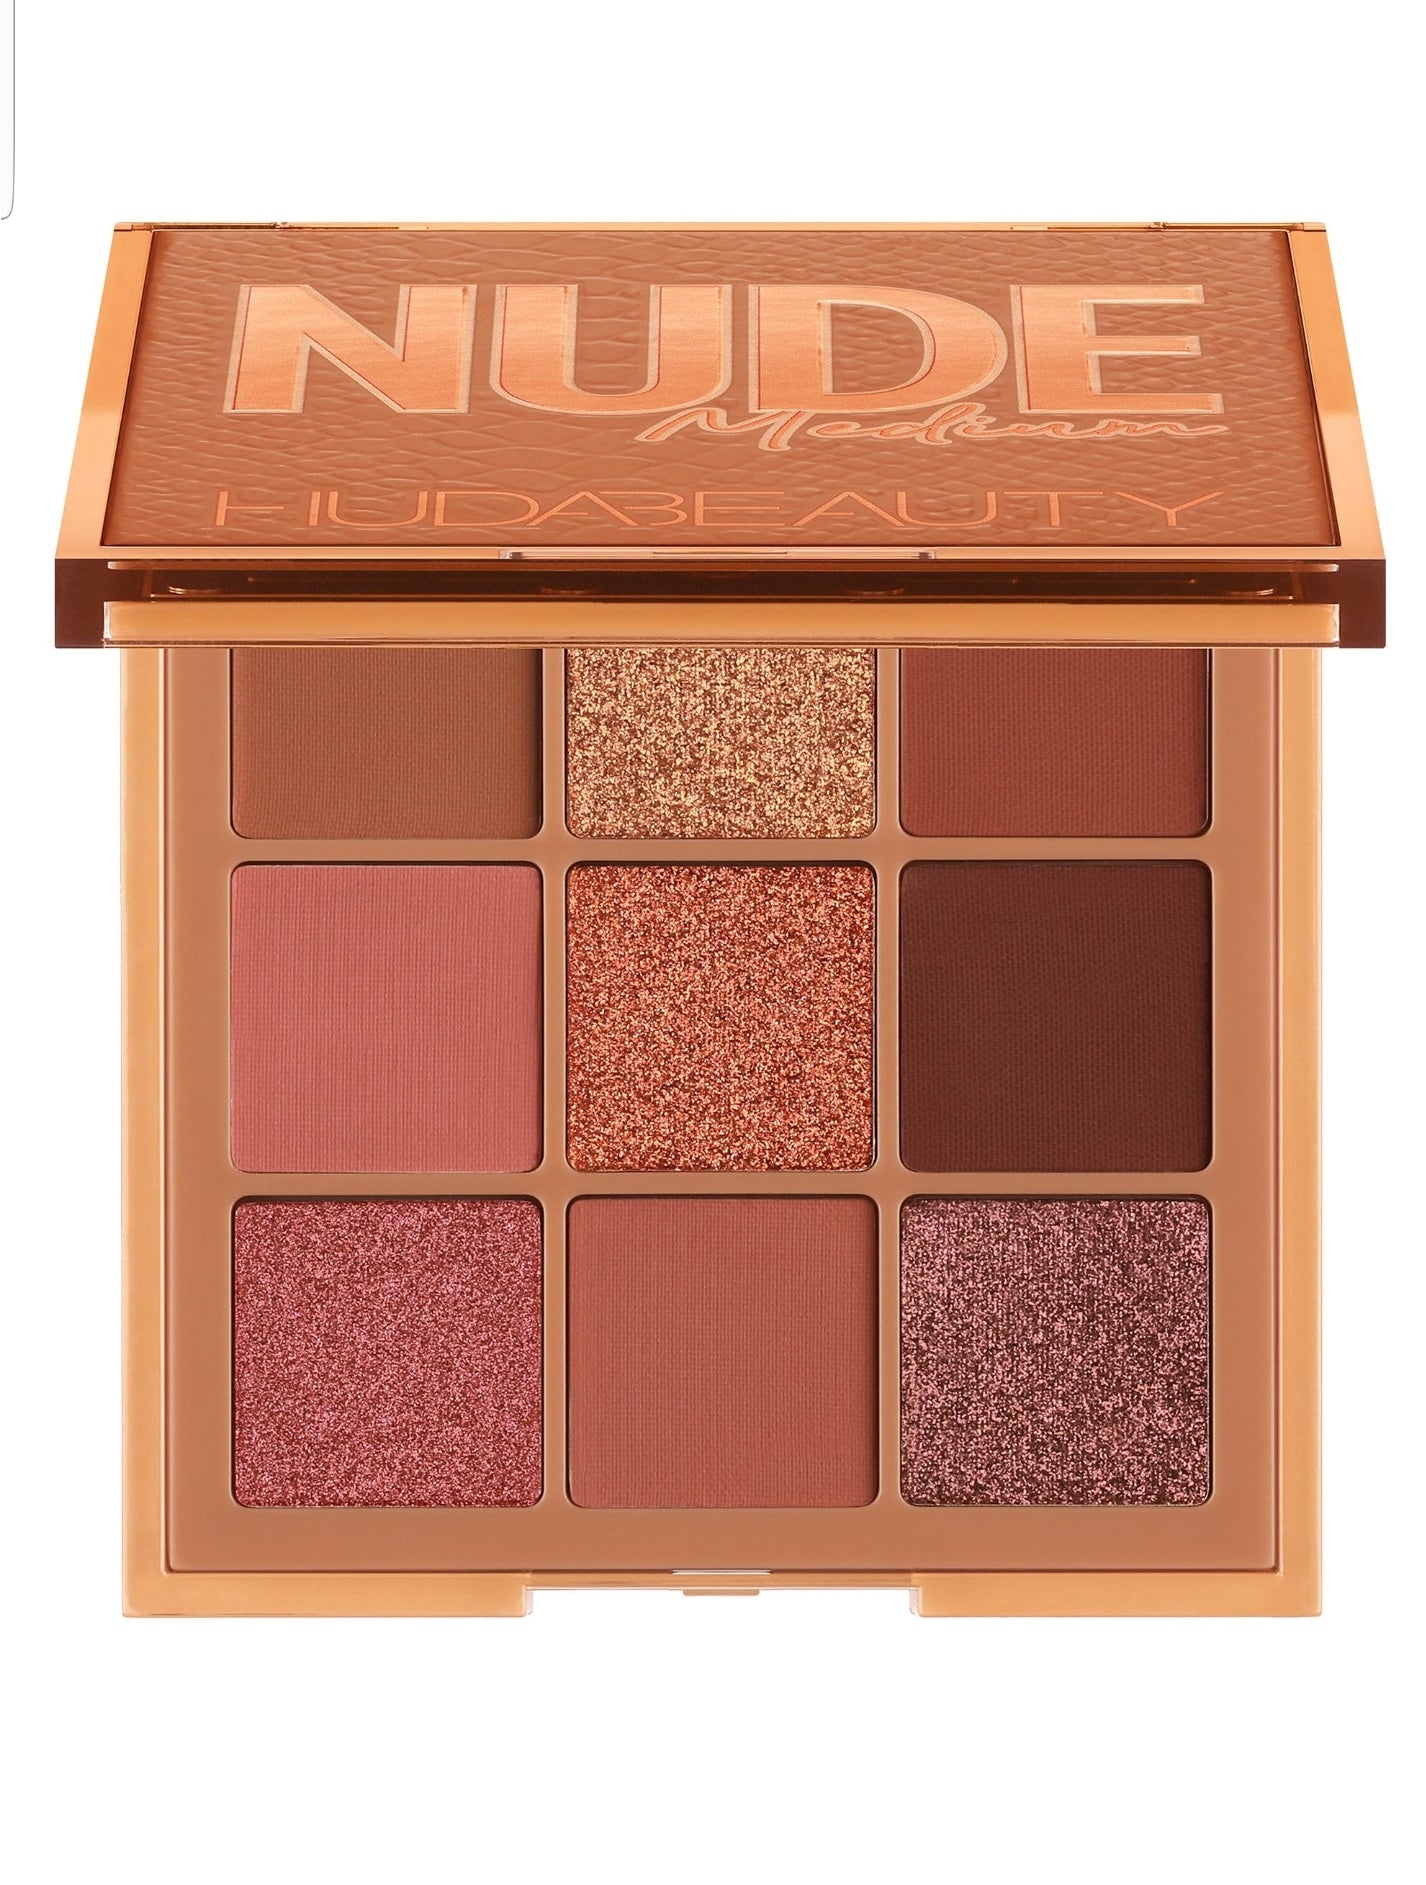 Mini Nude Medium eyeshadow palette